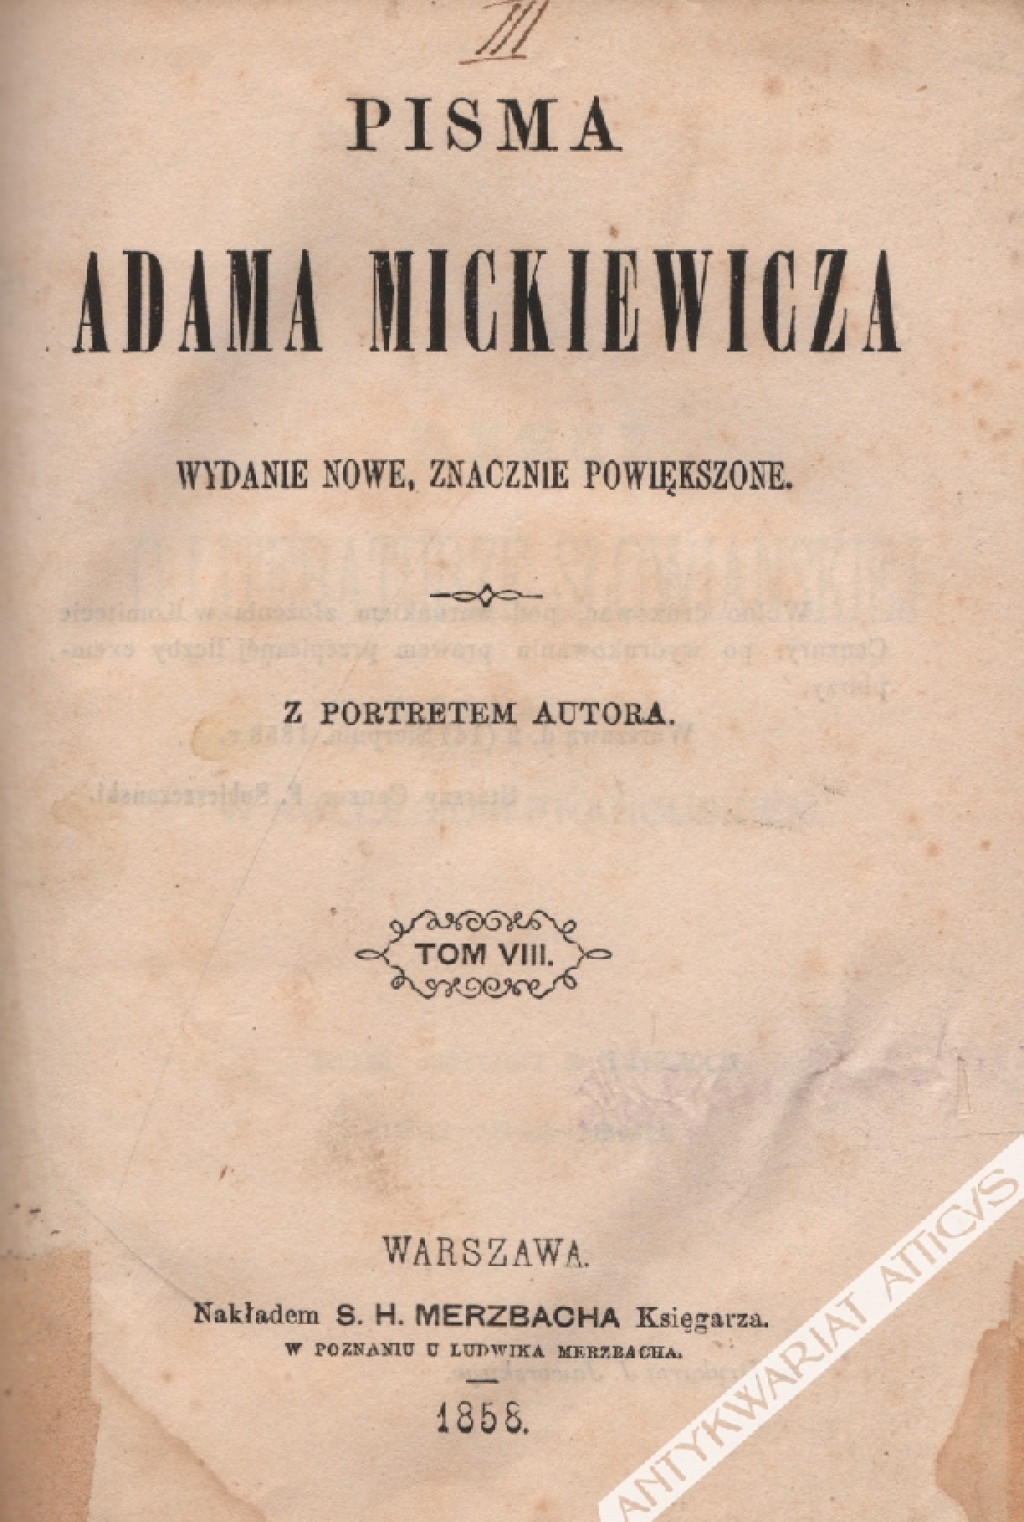 Pisma Adama Mickiewicza. Wydanie nowe, znacznie powiększone, t. VIII: Rzecz o literaturze słowiańskiej wykładana w kolegium francuskiem.